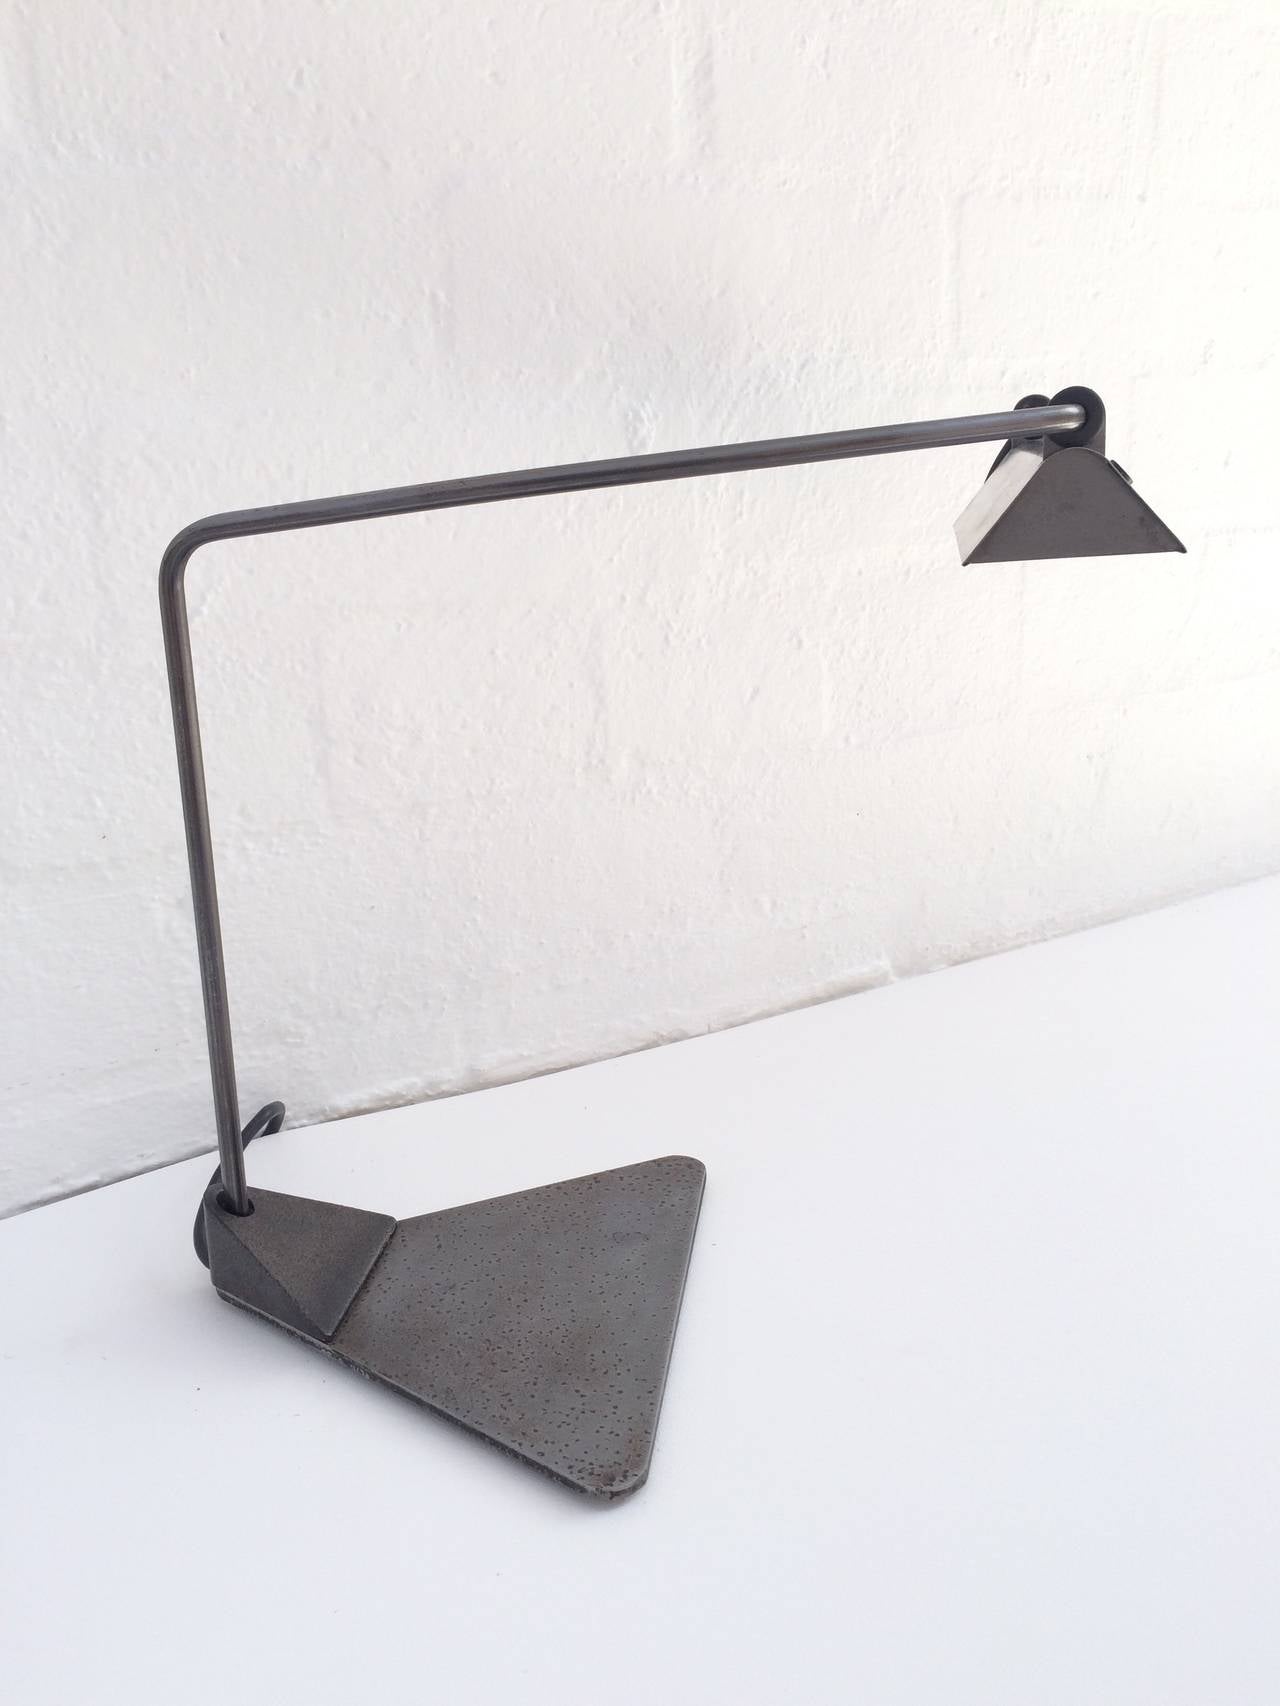 Lampe de bureau conçue par Ron Rezek. 
Cette lampe présente une finition en acier brut, un bras et un abat-jour réglables,
vers les années 1980.